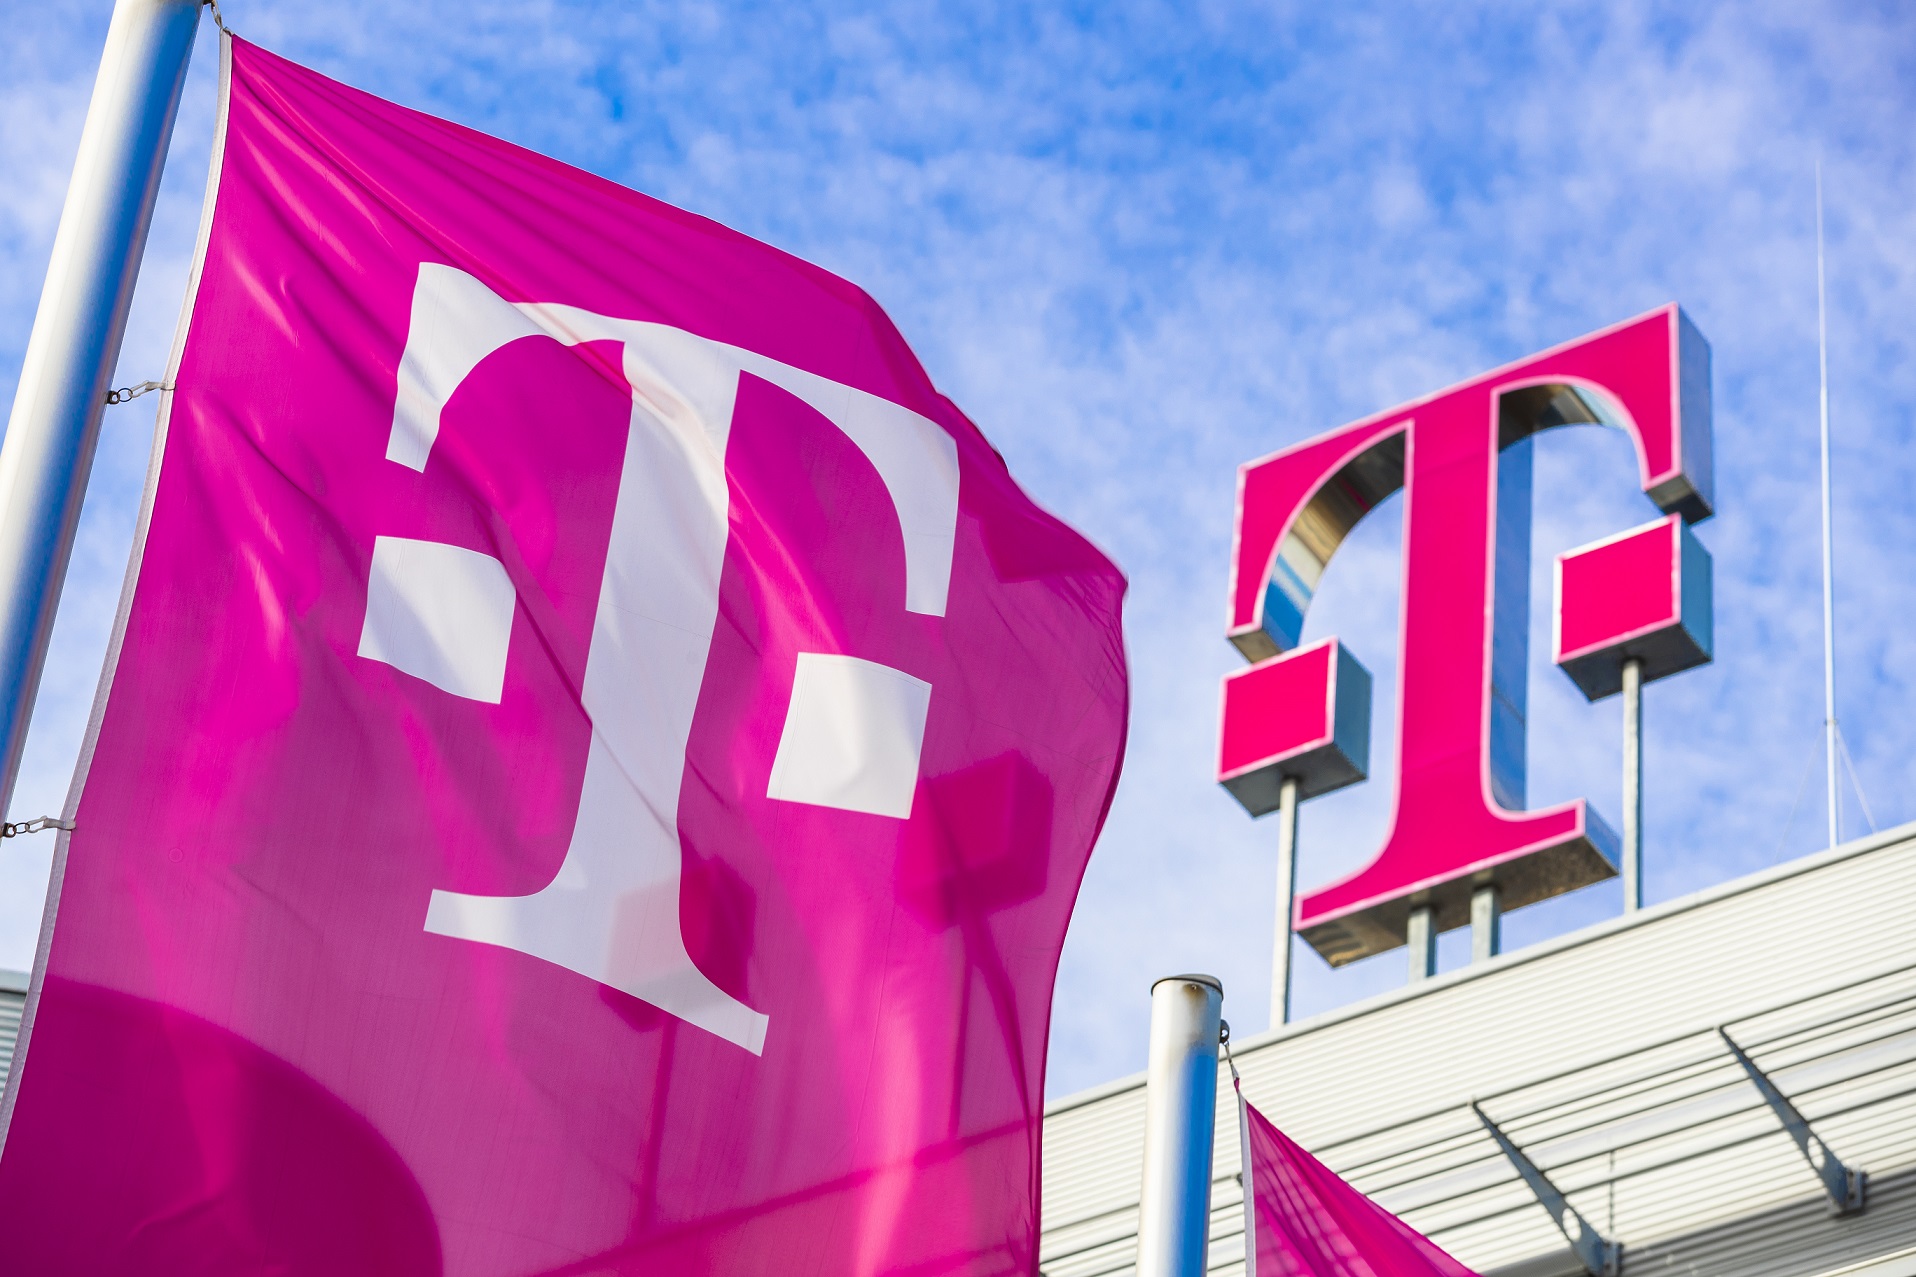 Νέα μεγάλη επένδυση της Deutsche Telekom στην Ελλάδα: Κέντρο Πληροφορικής και Λογισμικού στην Θεσσαλονίκη